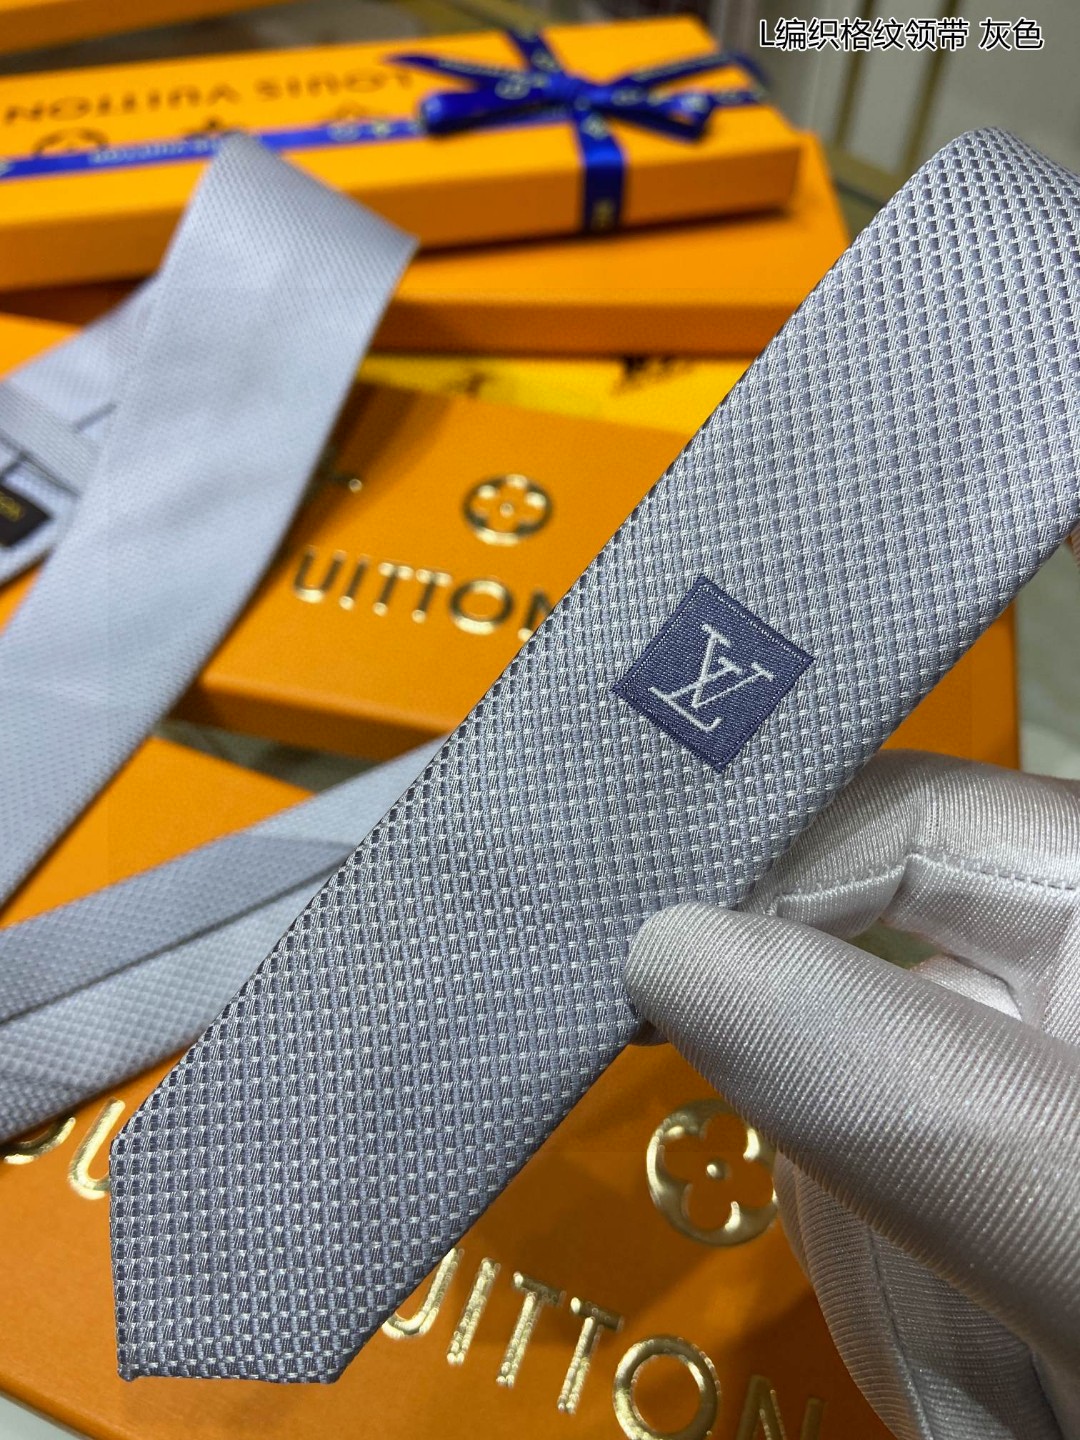 男士领带系列L编织格纹领带稀有展现精湛手工与时尚优雅的理想选择此款真丝织就的DiamondsV领带以奢华